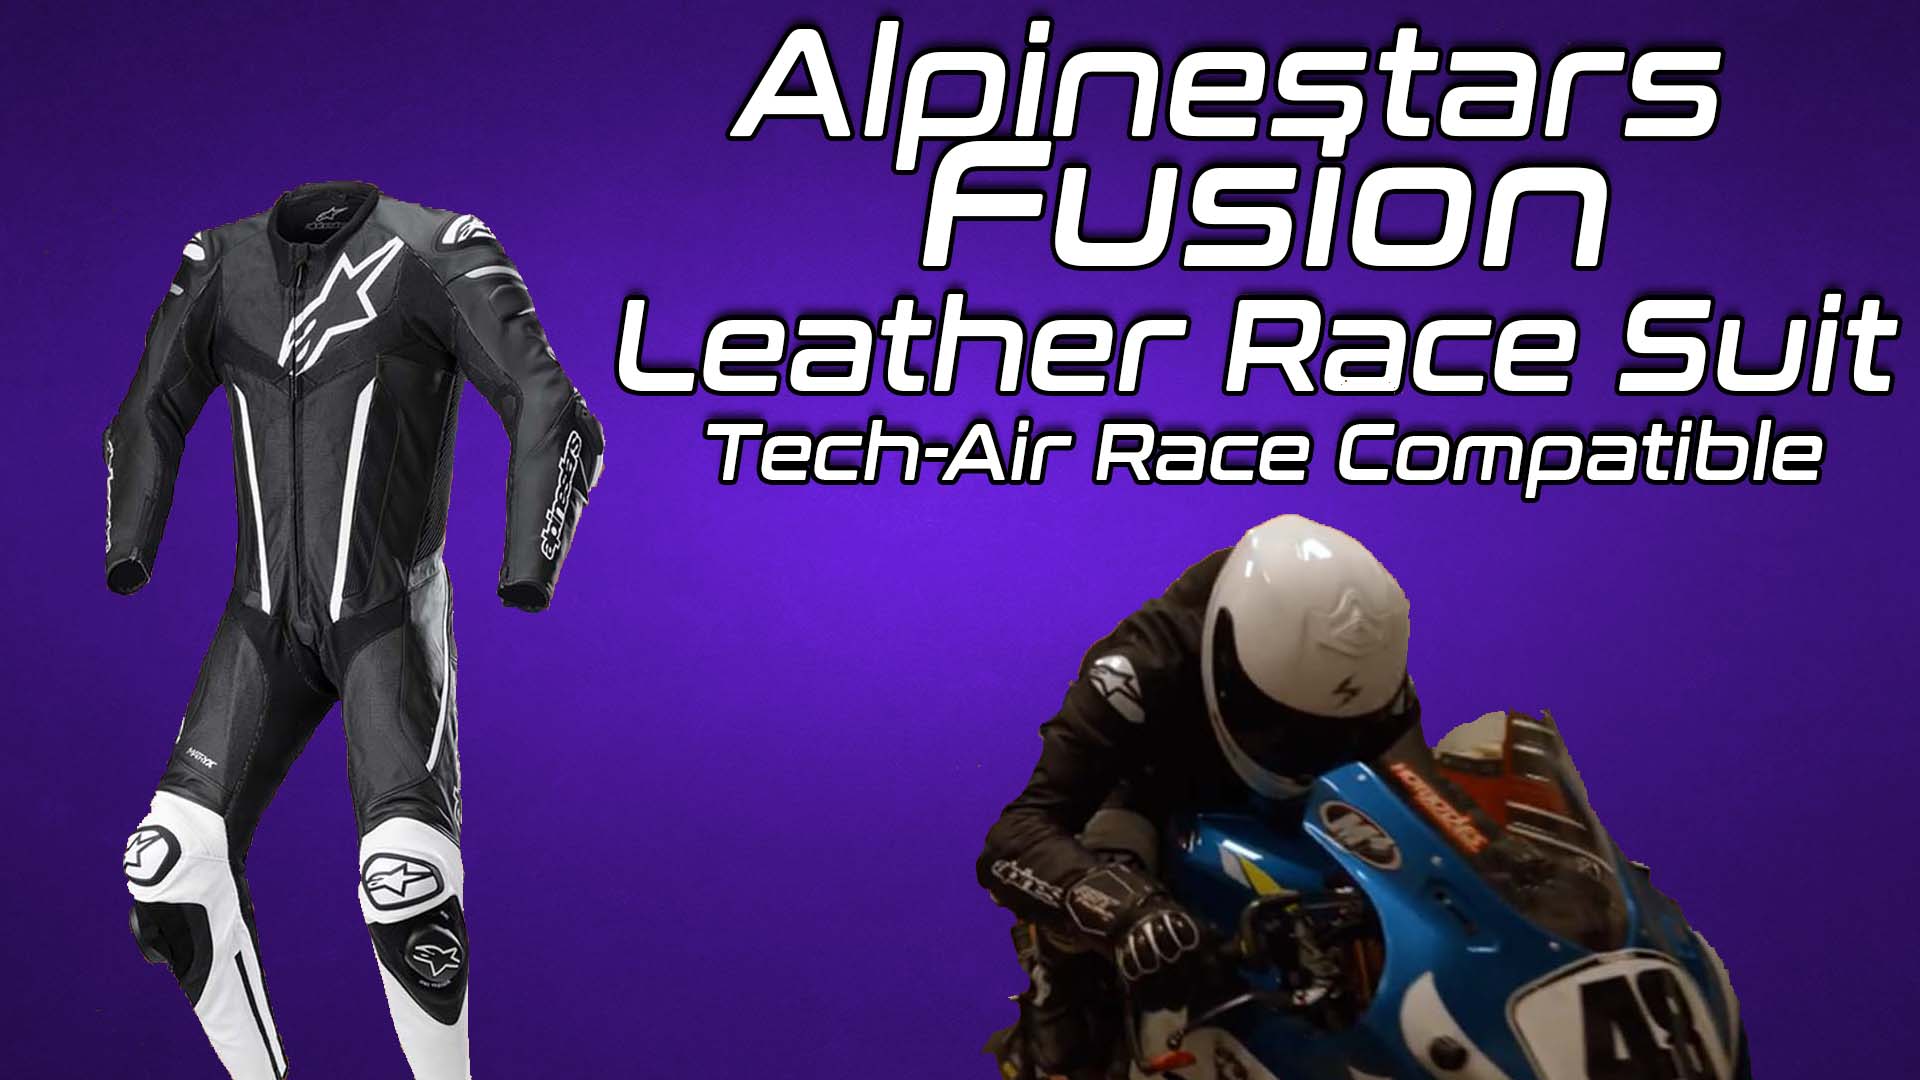 Alpinestars Fusion Leather Race Suit Tech-Air 5 Compatible